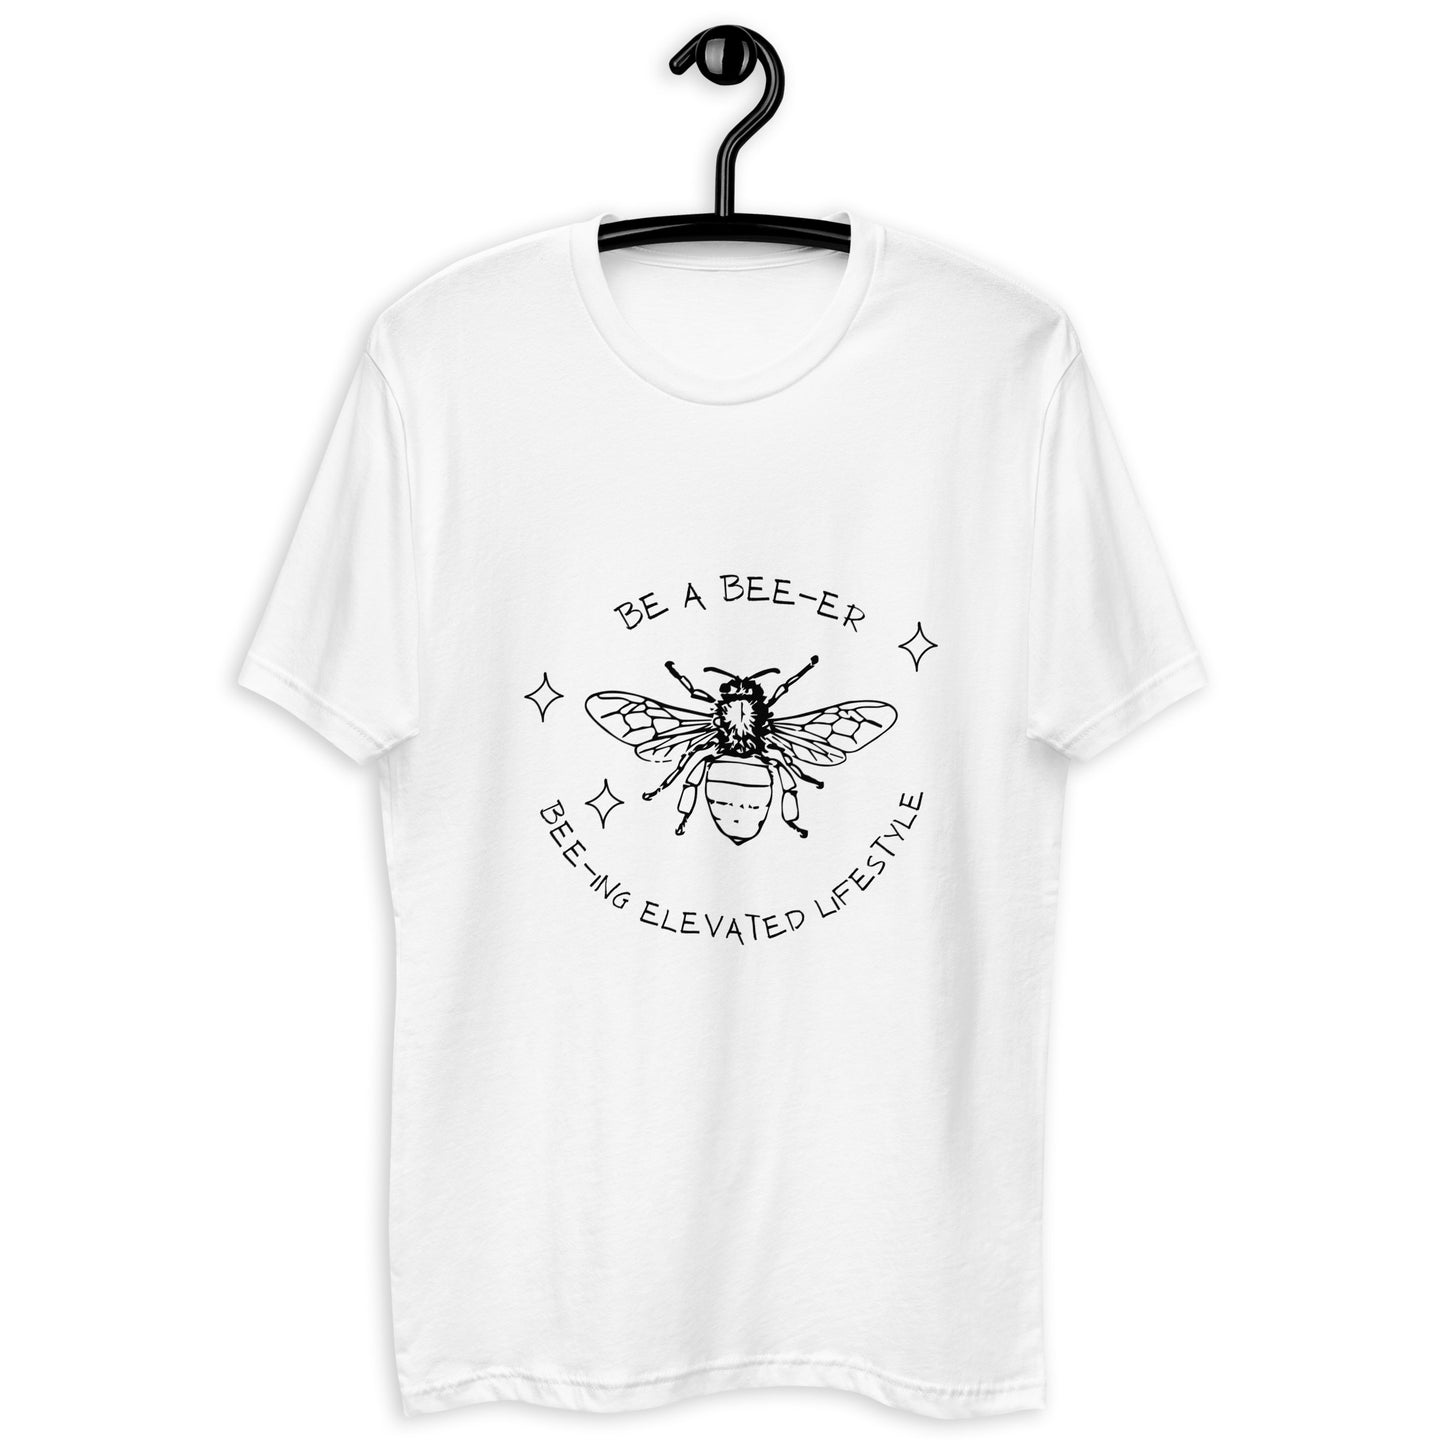 BE A BEE-ER Short Sleeve T-shirt